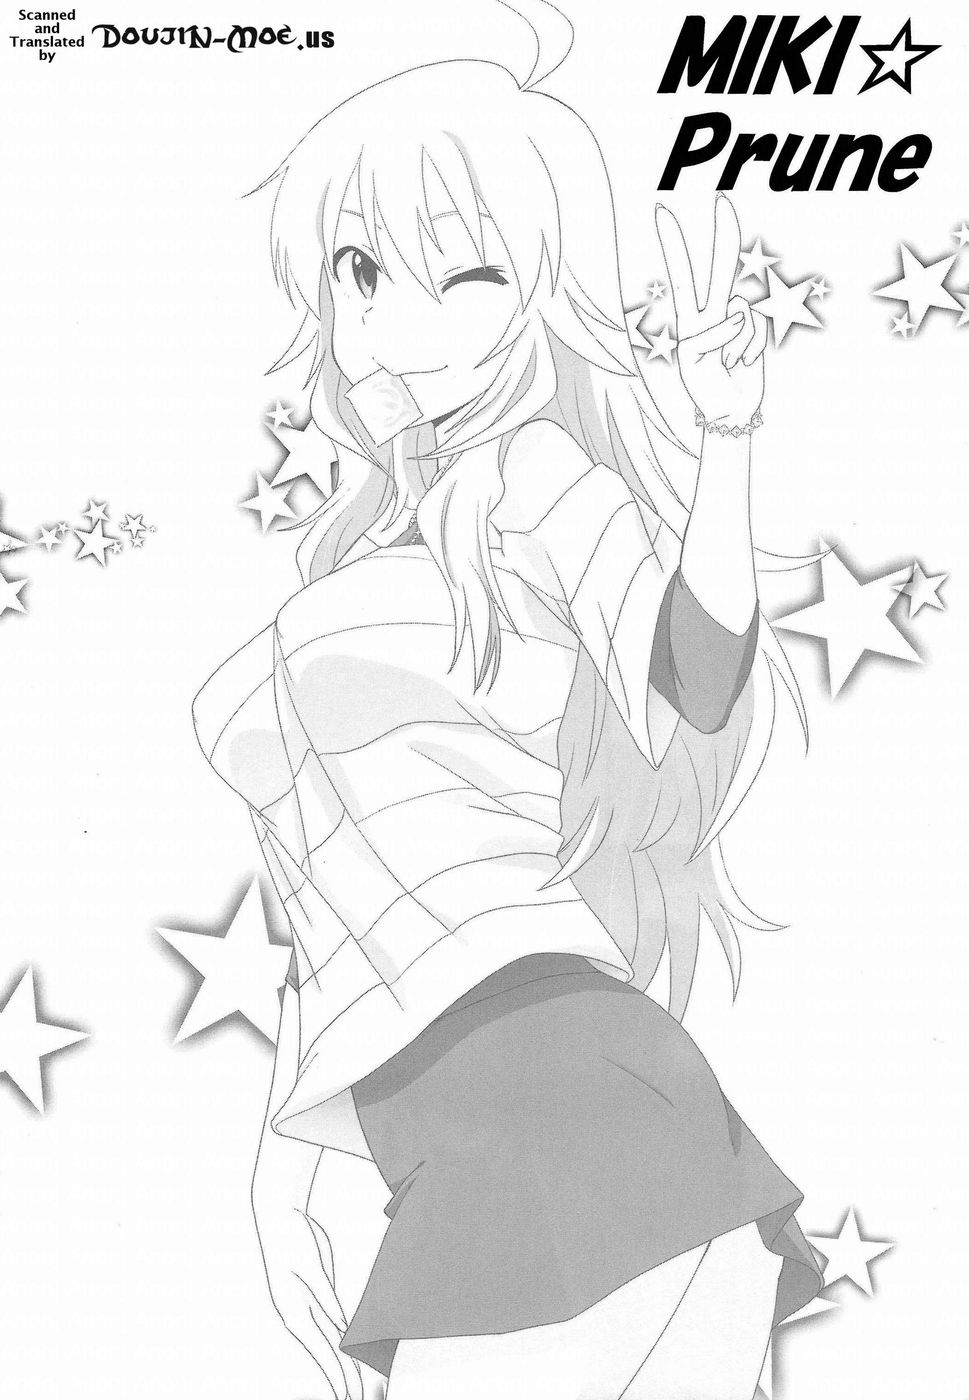 Hentai Manga Comic-Miki Puru~n-Read-2